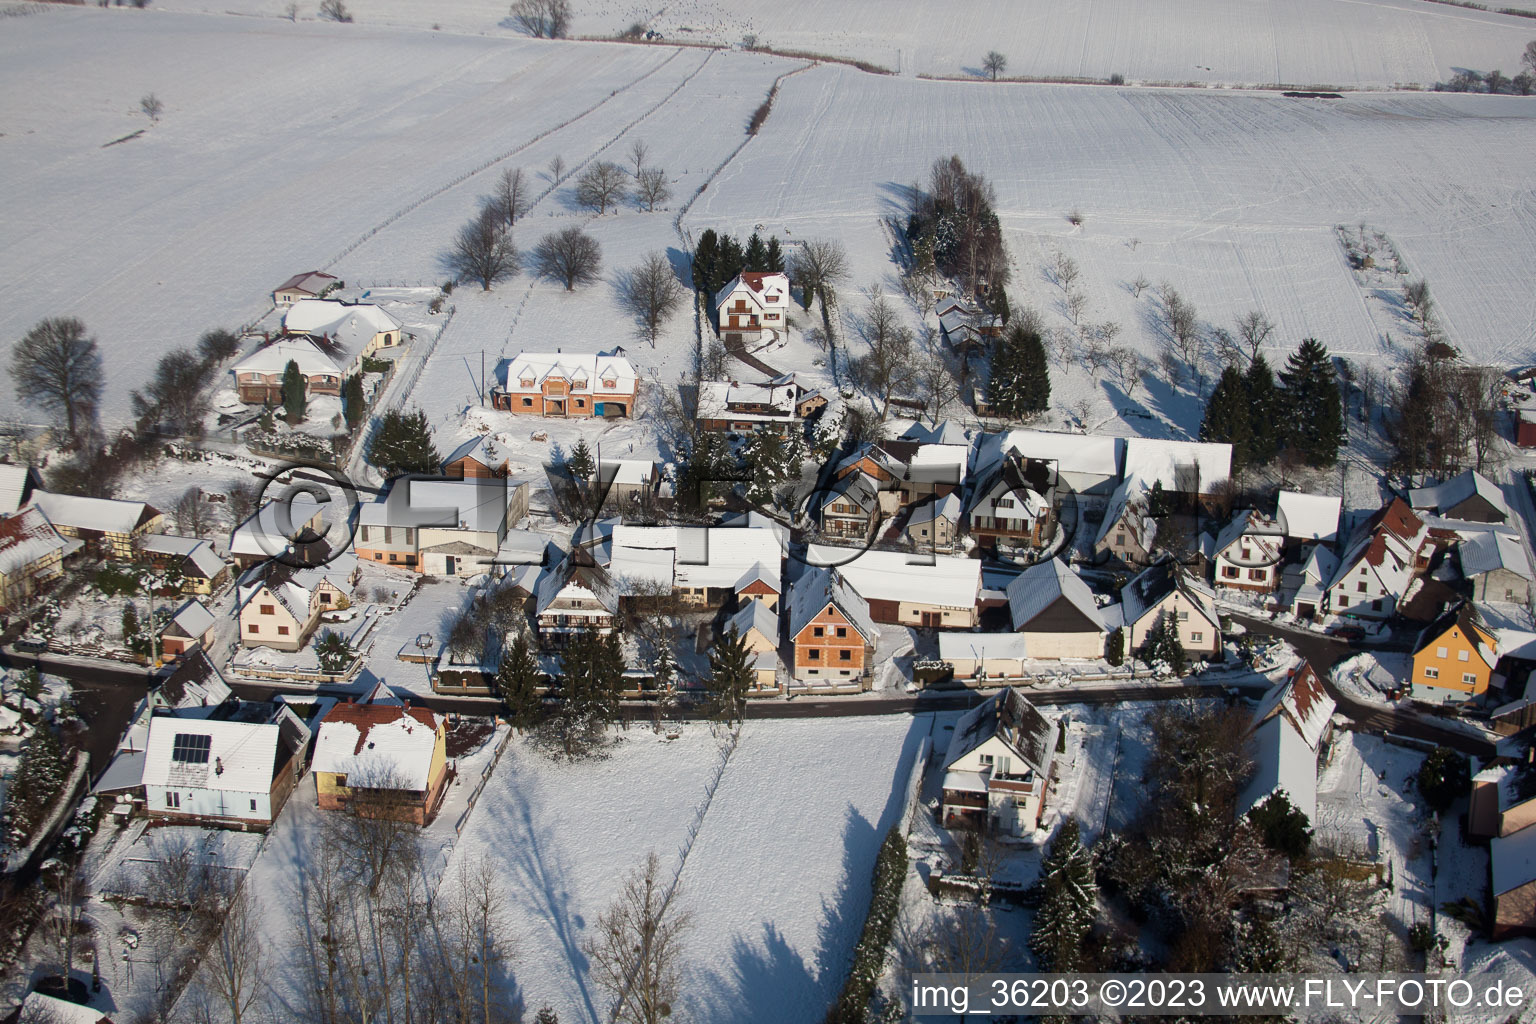 Wintzenbach (Elsass) im Bundesland Bas-Rhin, Frankreich aus der Luft betrachtet